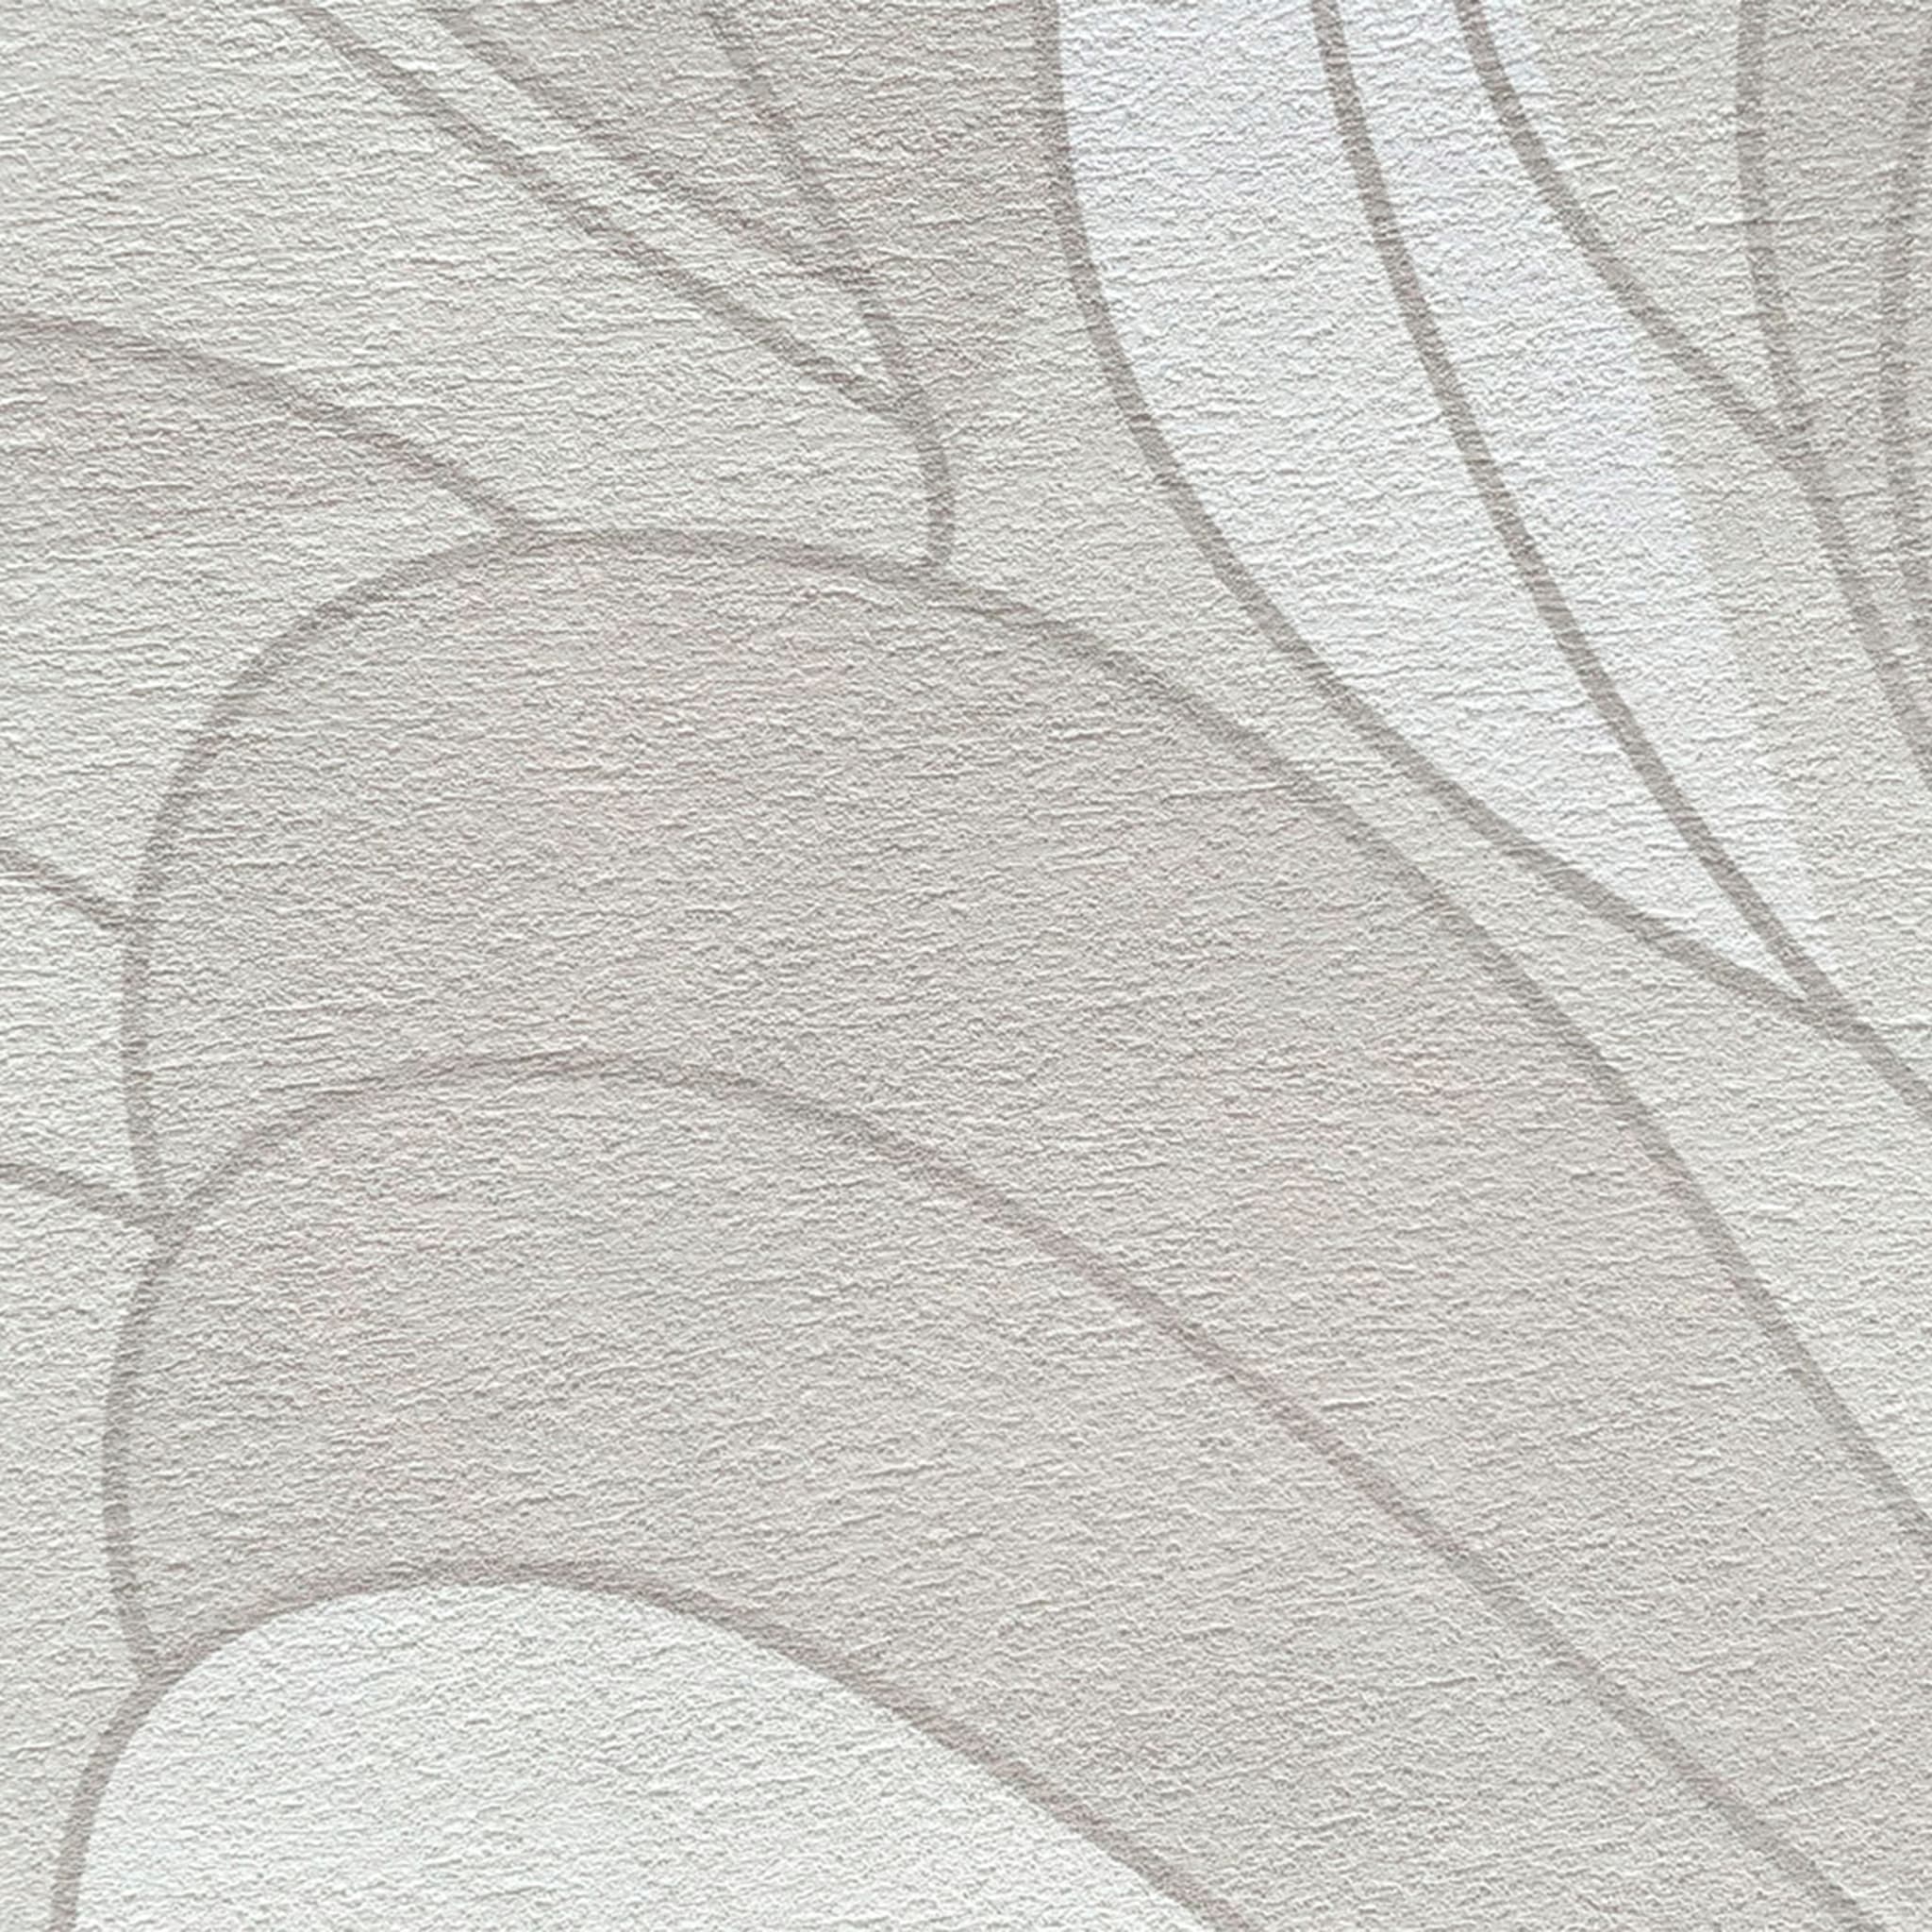 Beige Soft Motion textured wallpaper - Alternative view 1